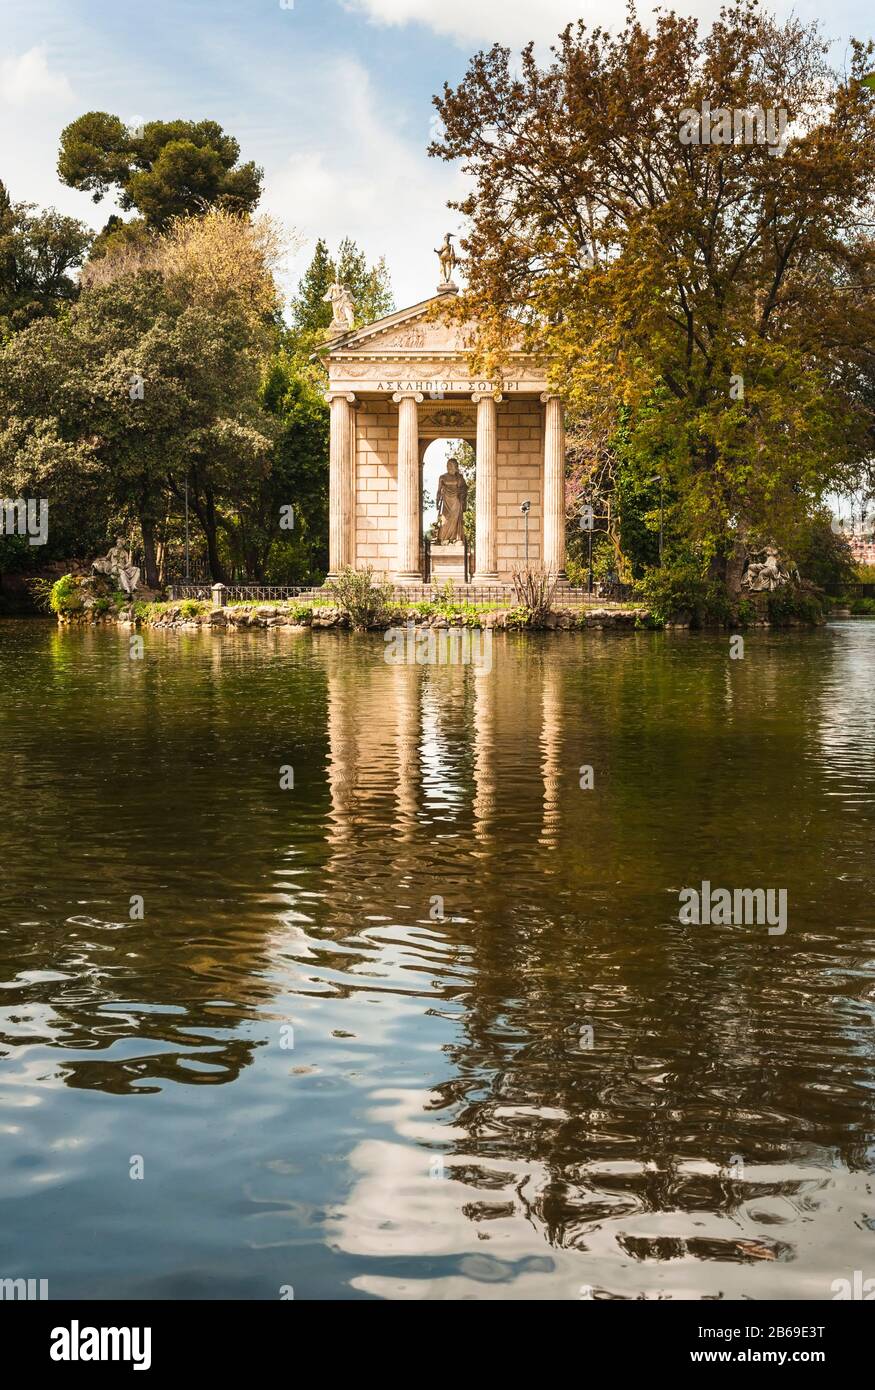 Giardini dei laghi di Roma - il tempio ionico di Aesculaplus su un'isola nel lago del parco dei giardini di Villa Borghese a Roma Foto Stock